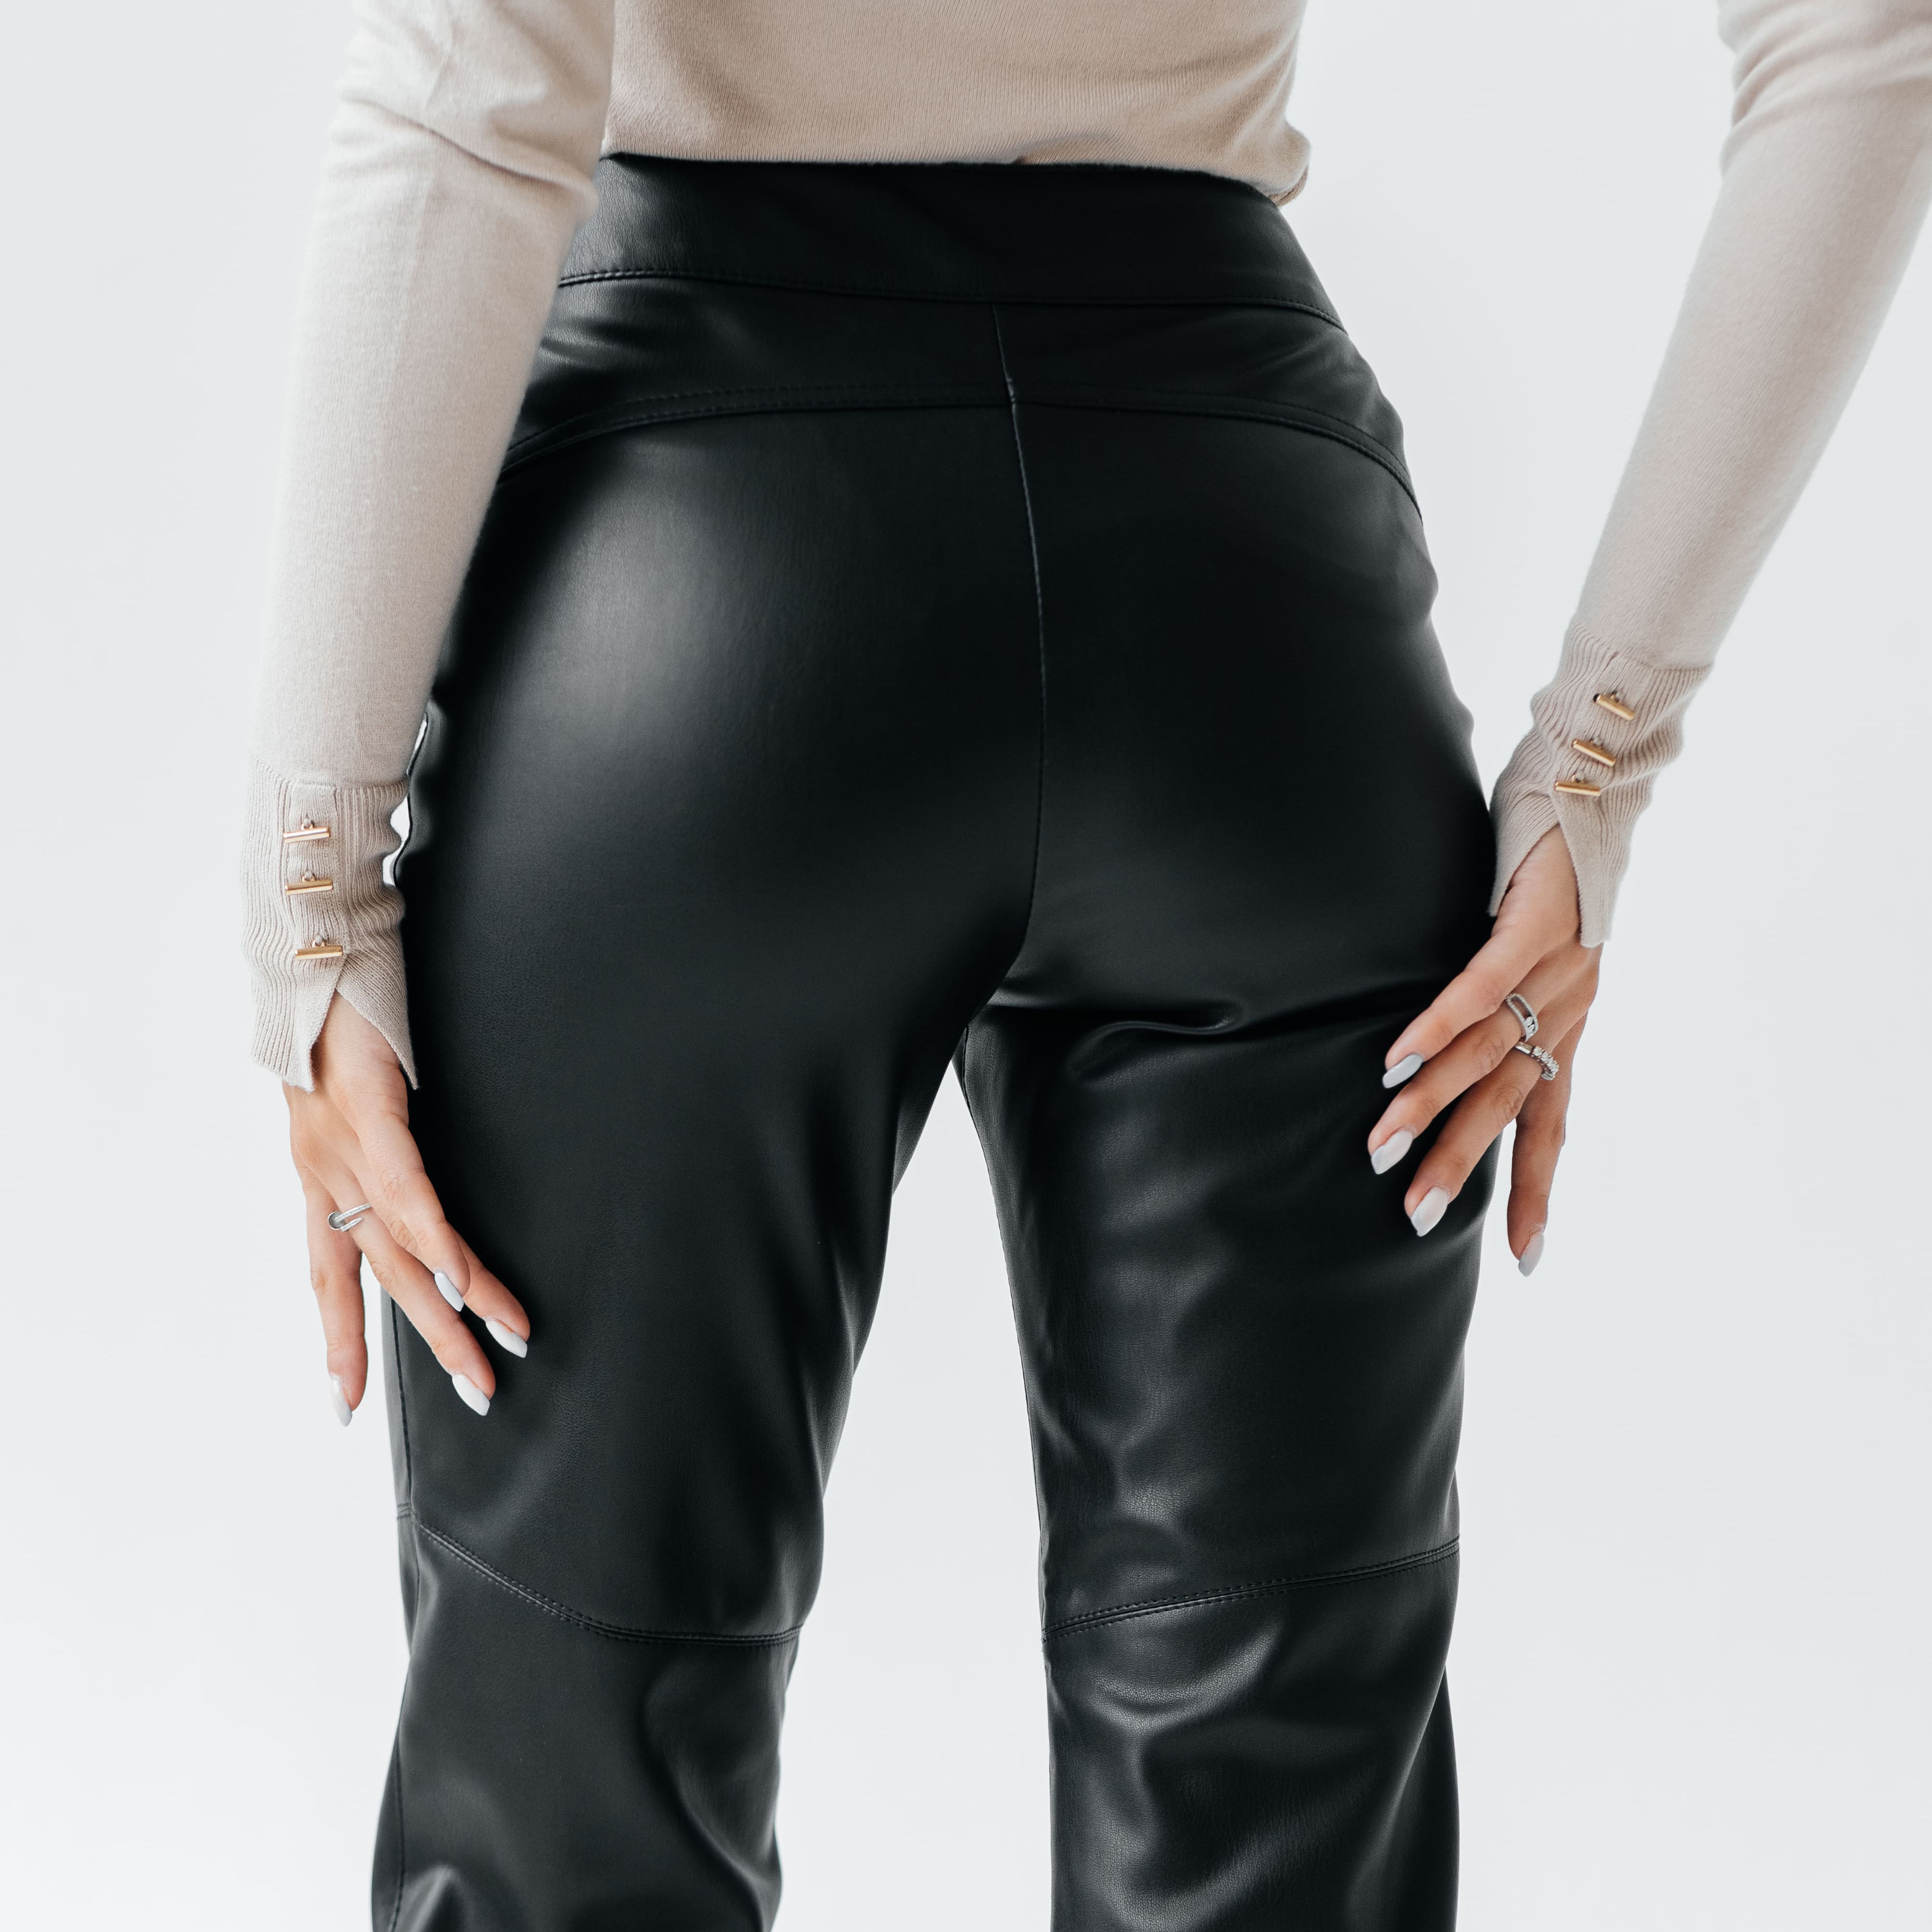 черные женские брюки купить в москве